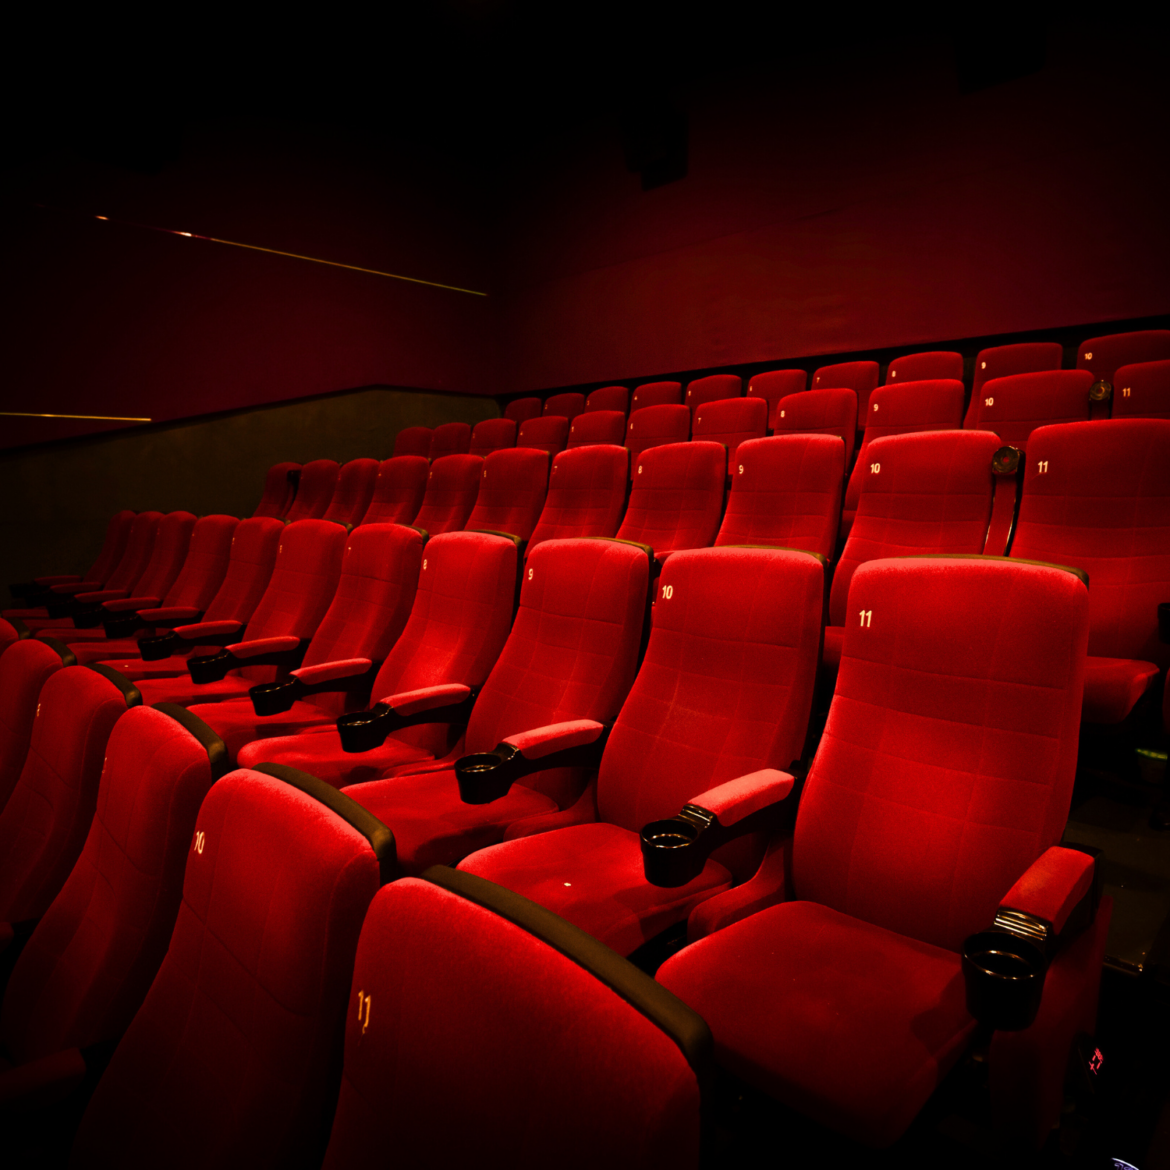 Achtung, Cineasten: Das unsichtbare Kino-Keimrisiko enttarnt!